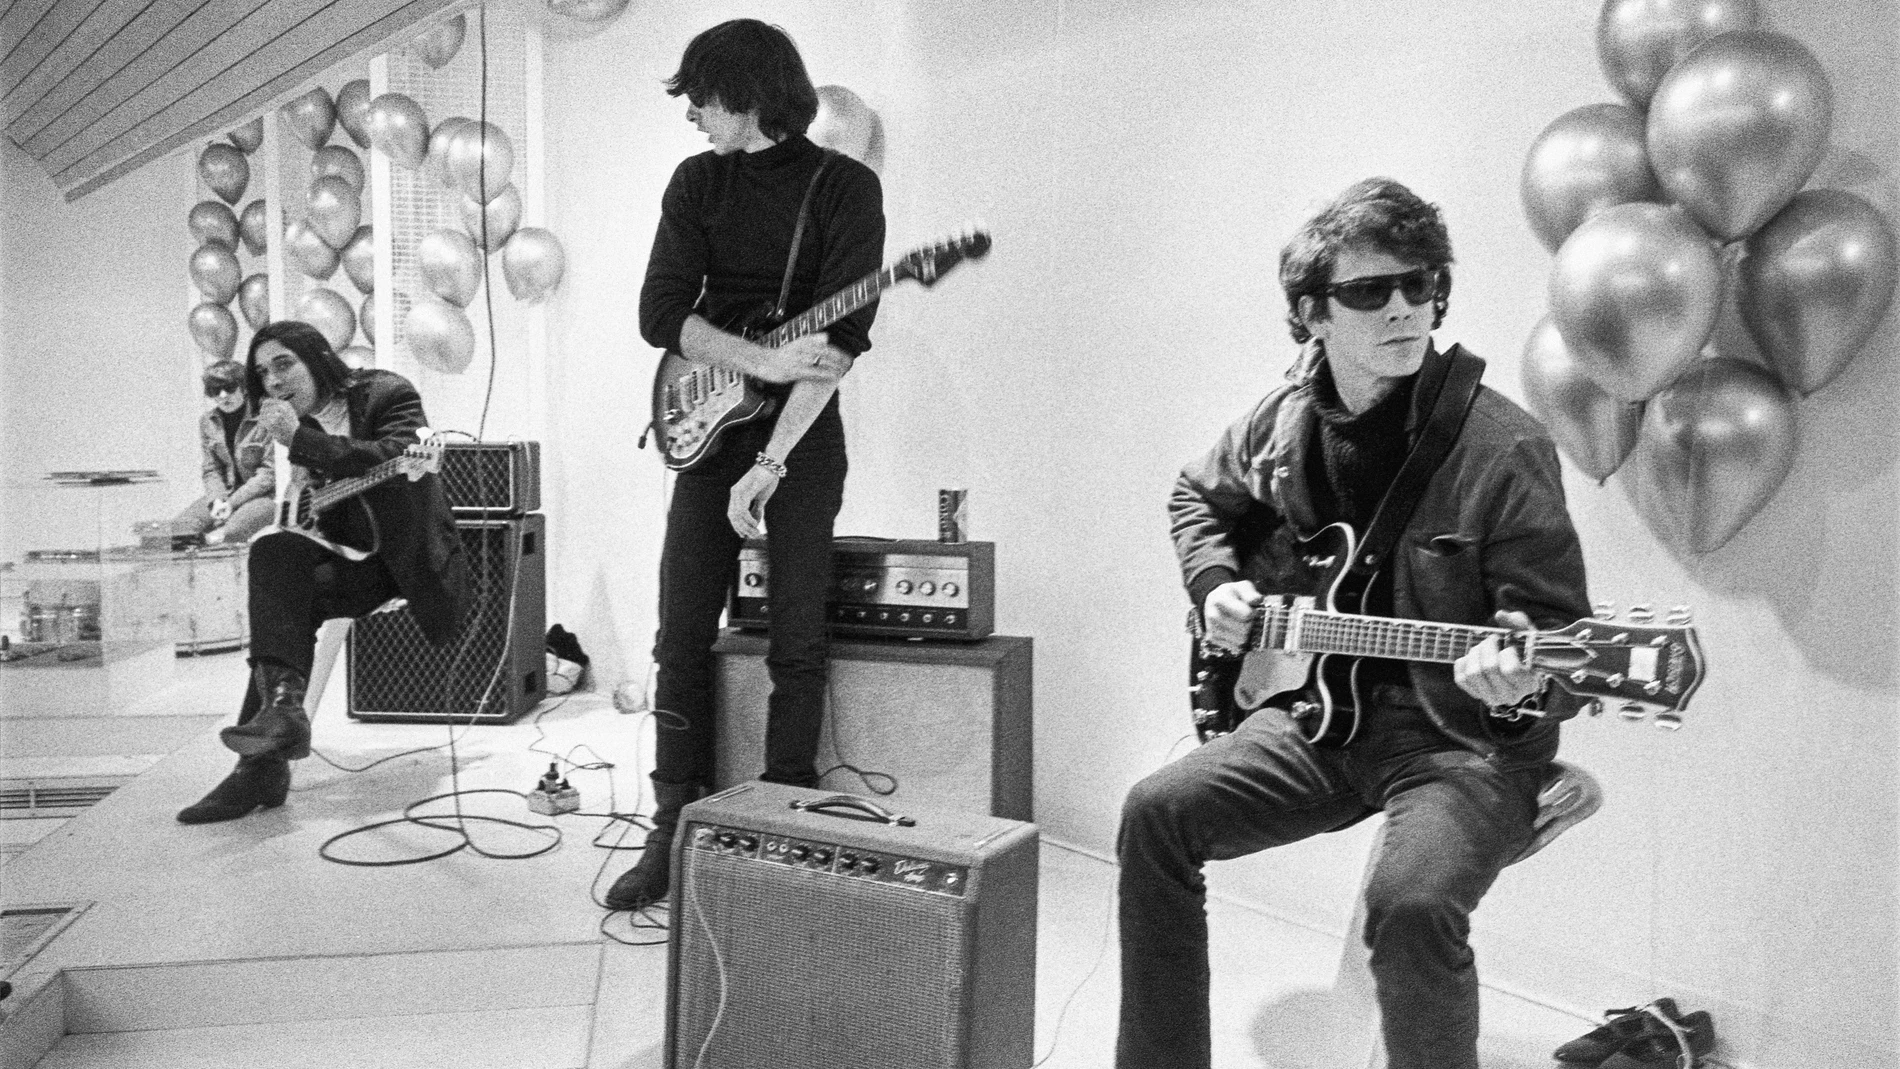 Manejados en lo comercial por Andy Warhol, de manera desastrosa, The Velvet Underground fue descontinuada a mediados de los setenta